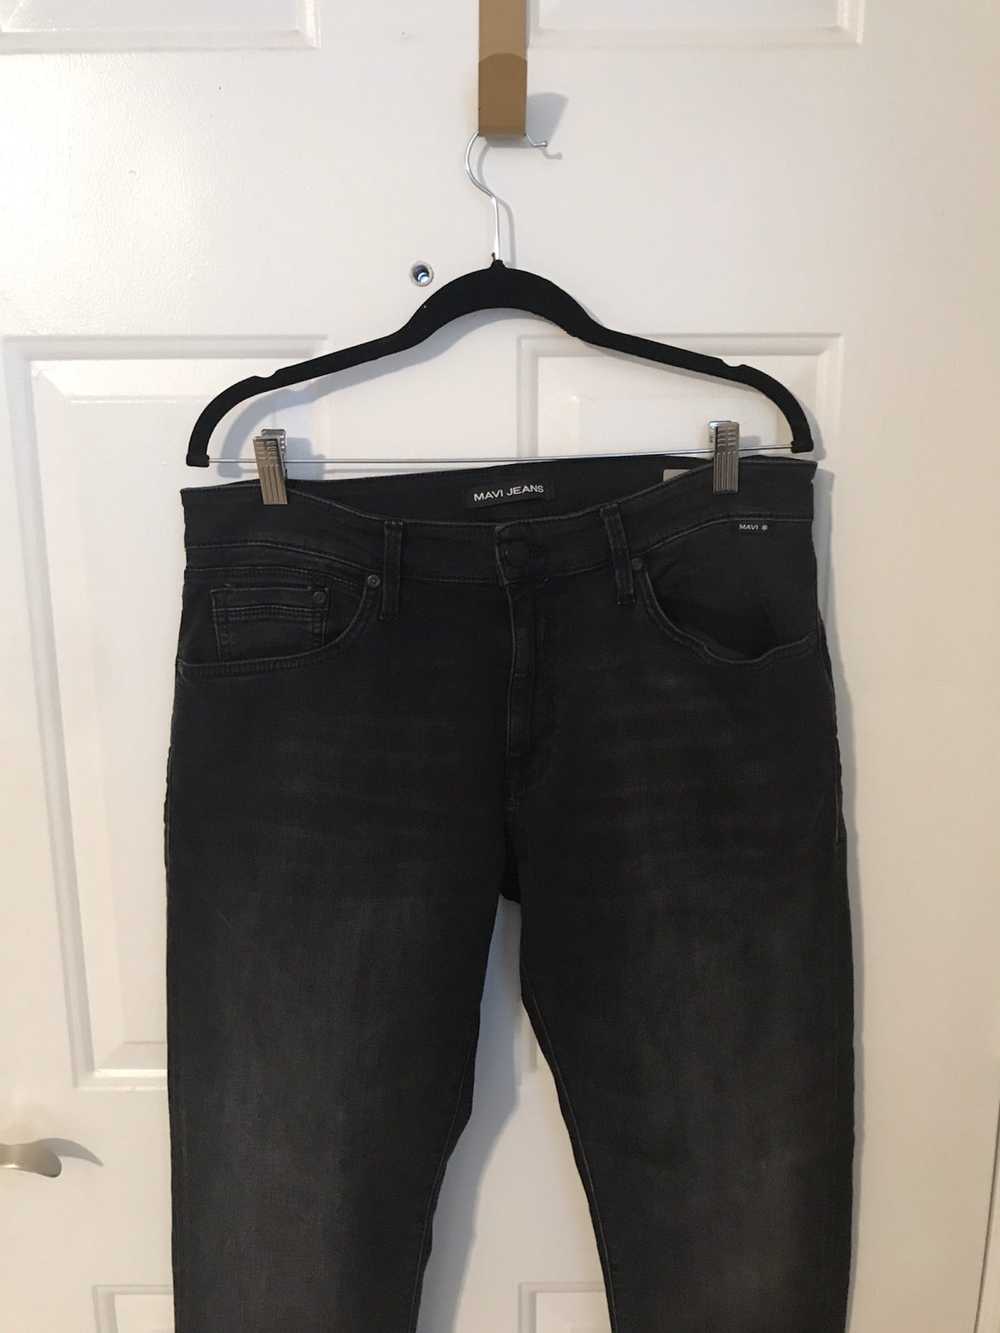 Mavi Marcus Slim Straight leg jeans - image 2